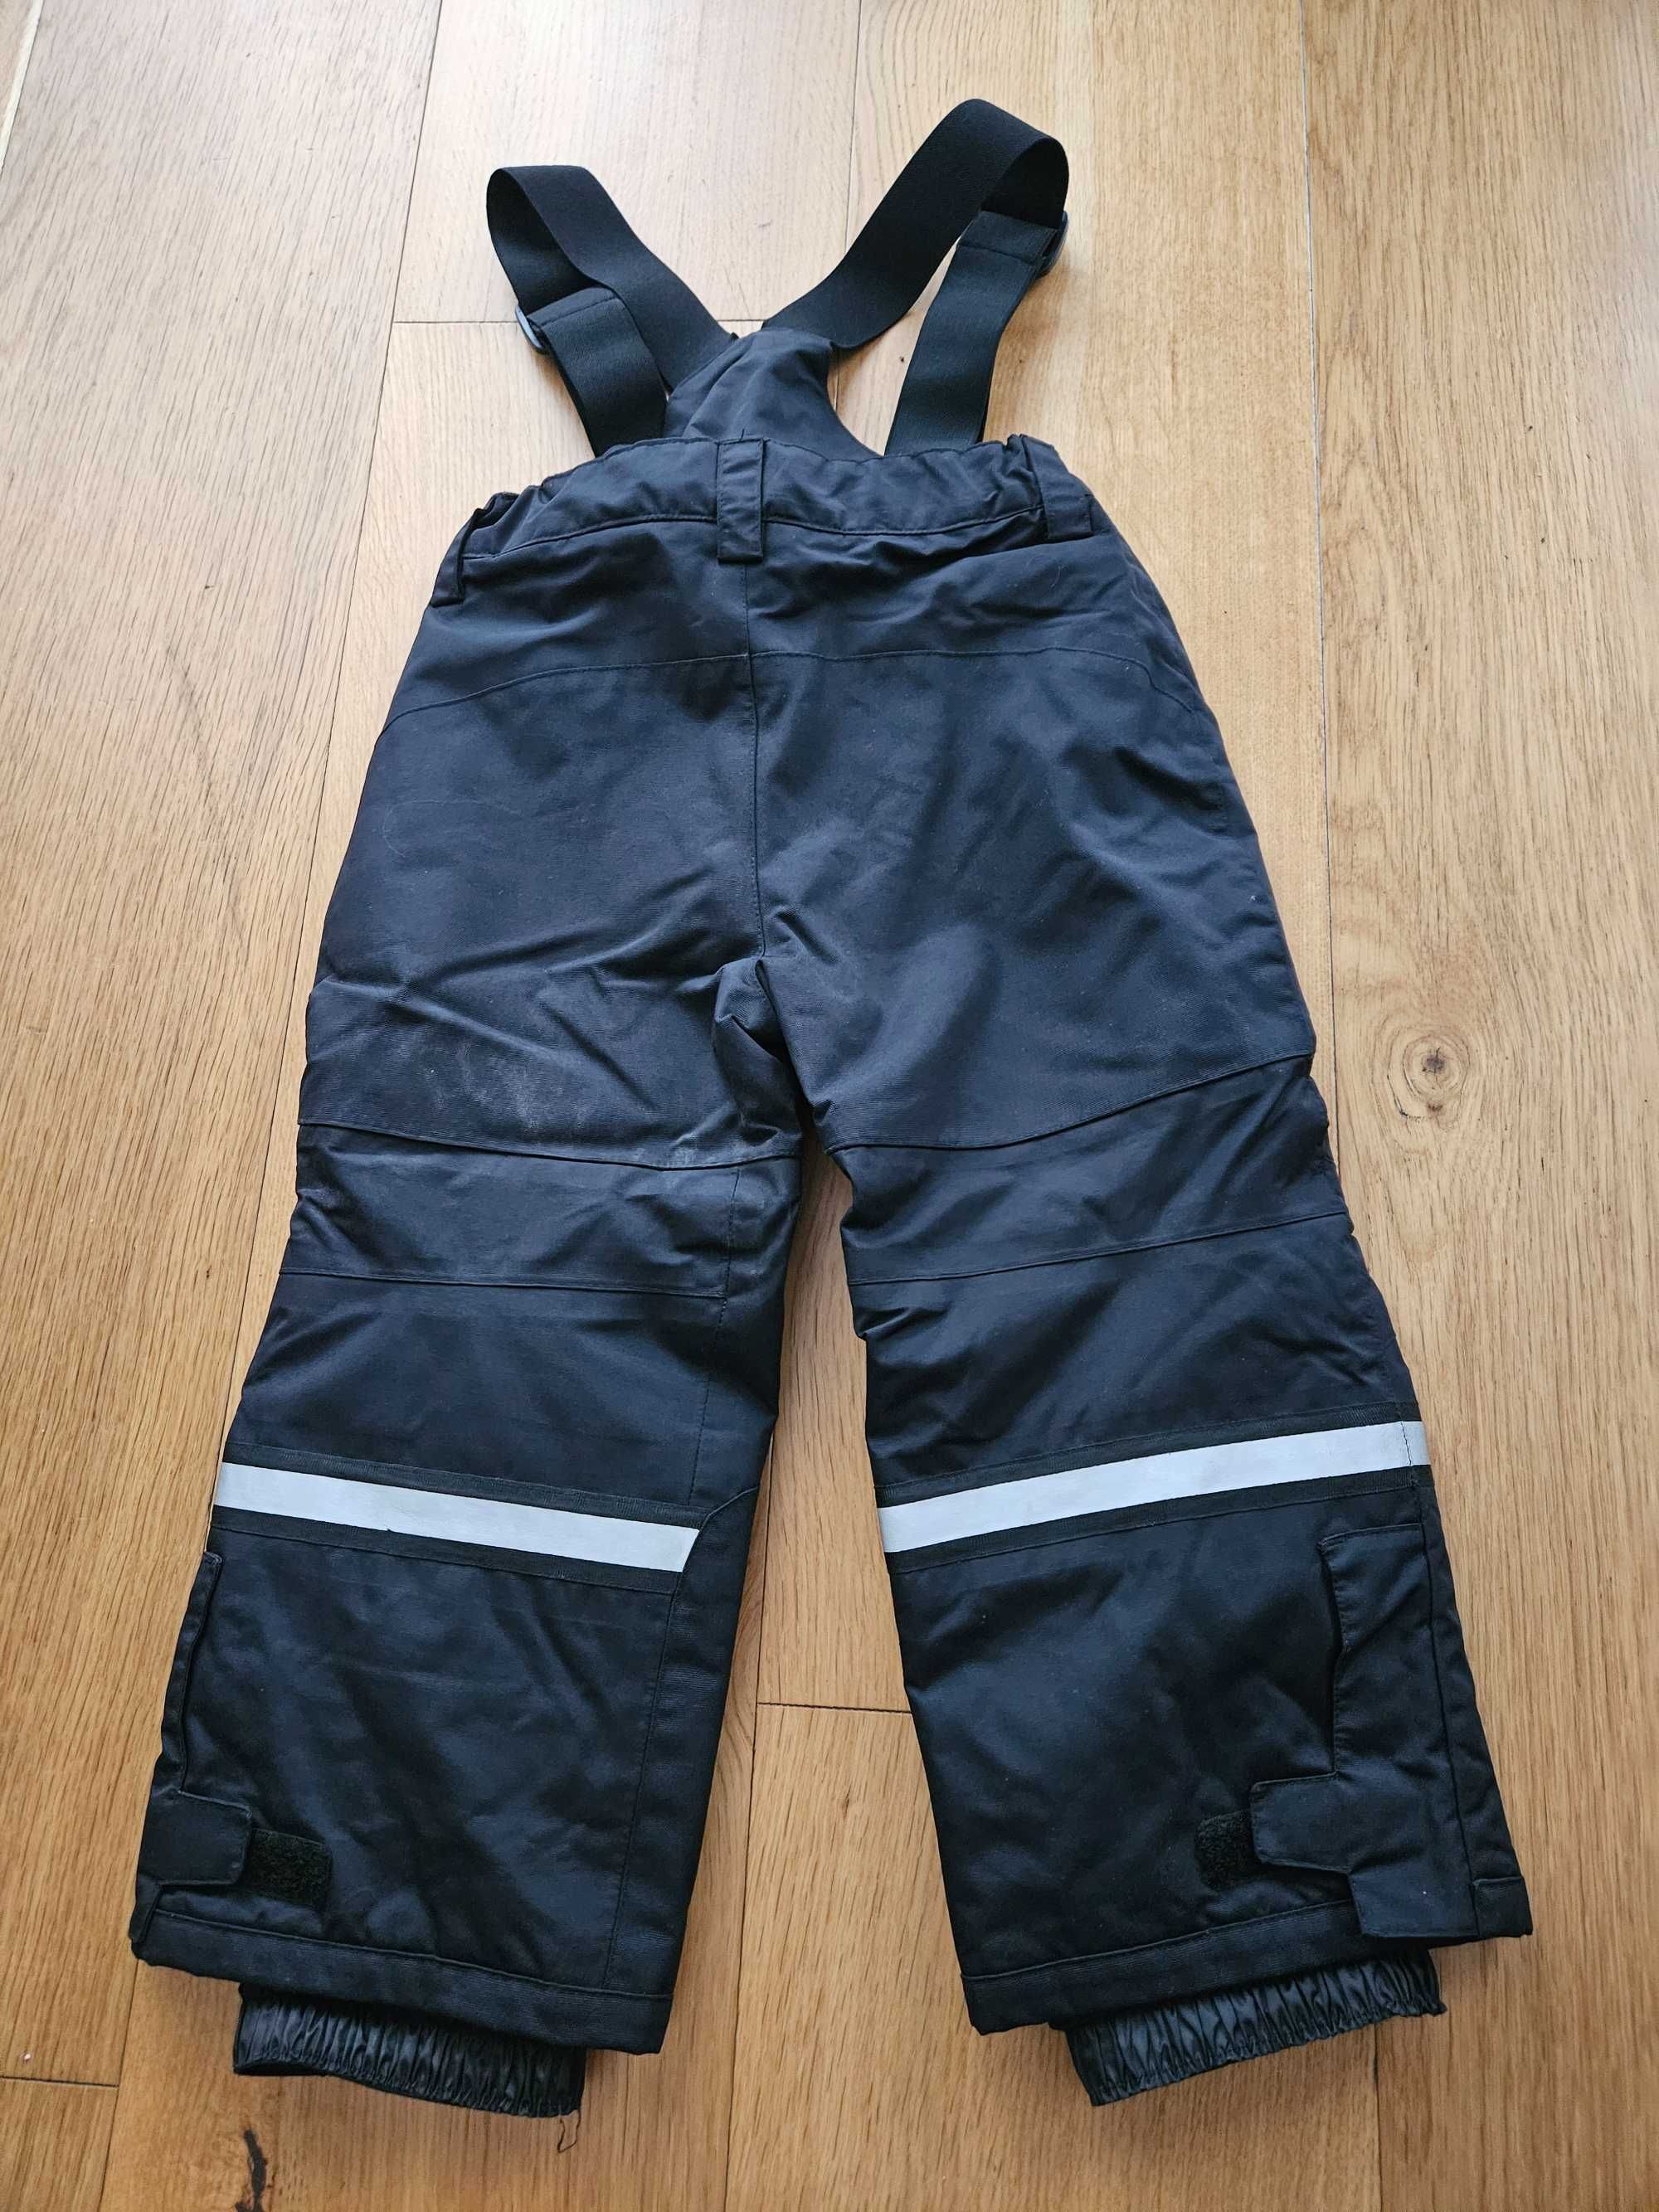 Spodnie zimowe / narciarskie KappAhl r. 98 stan idealny